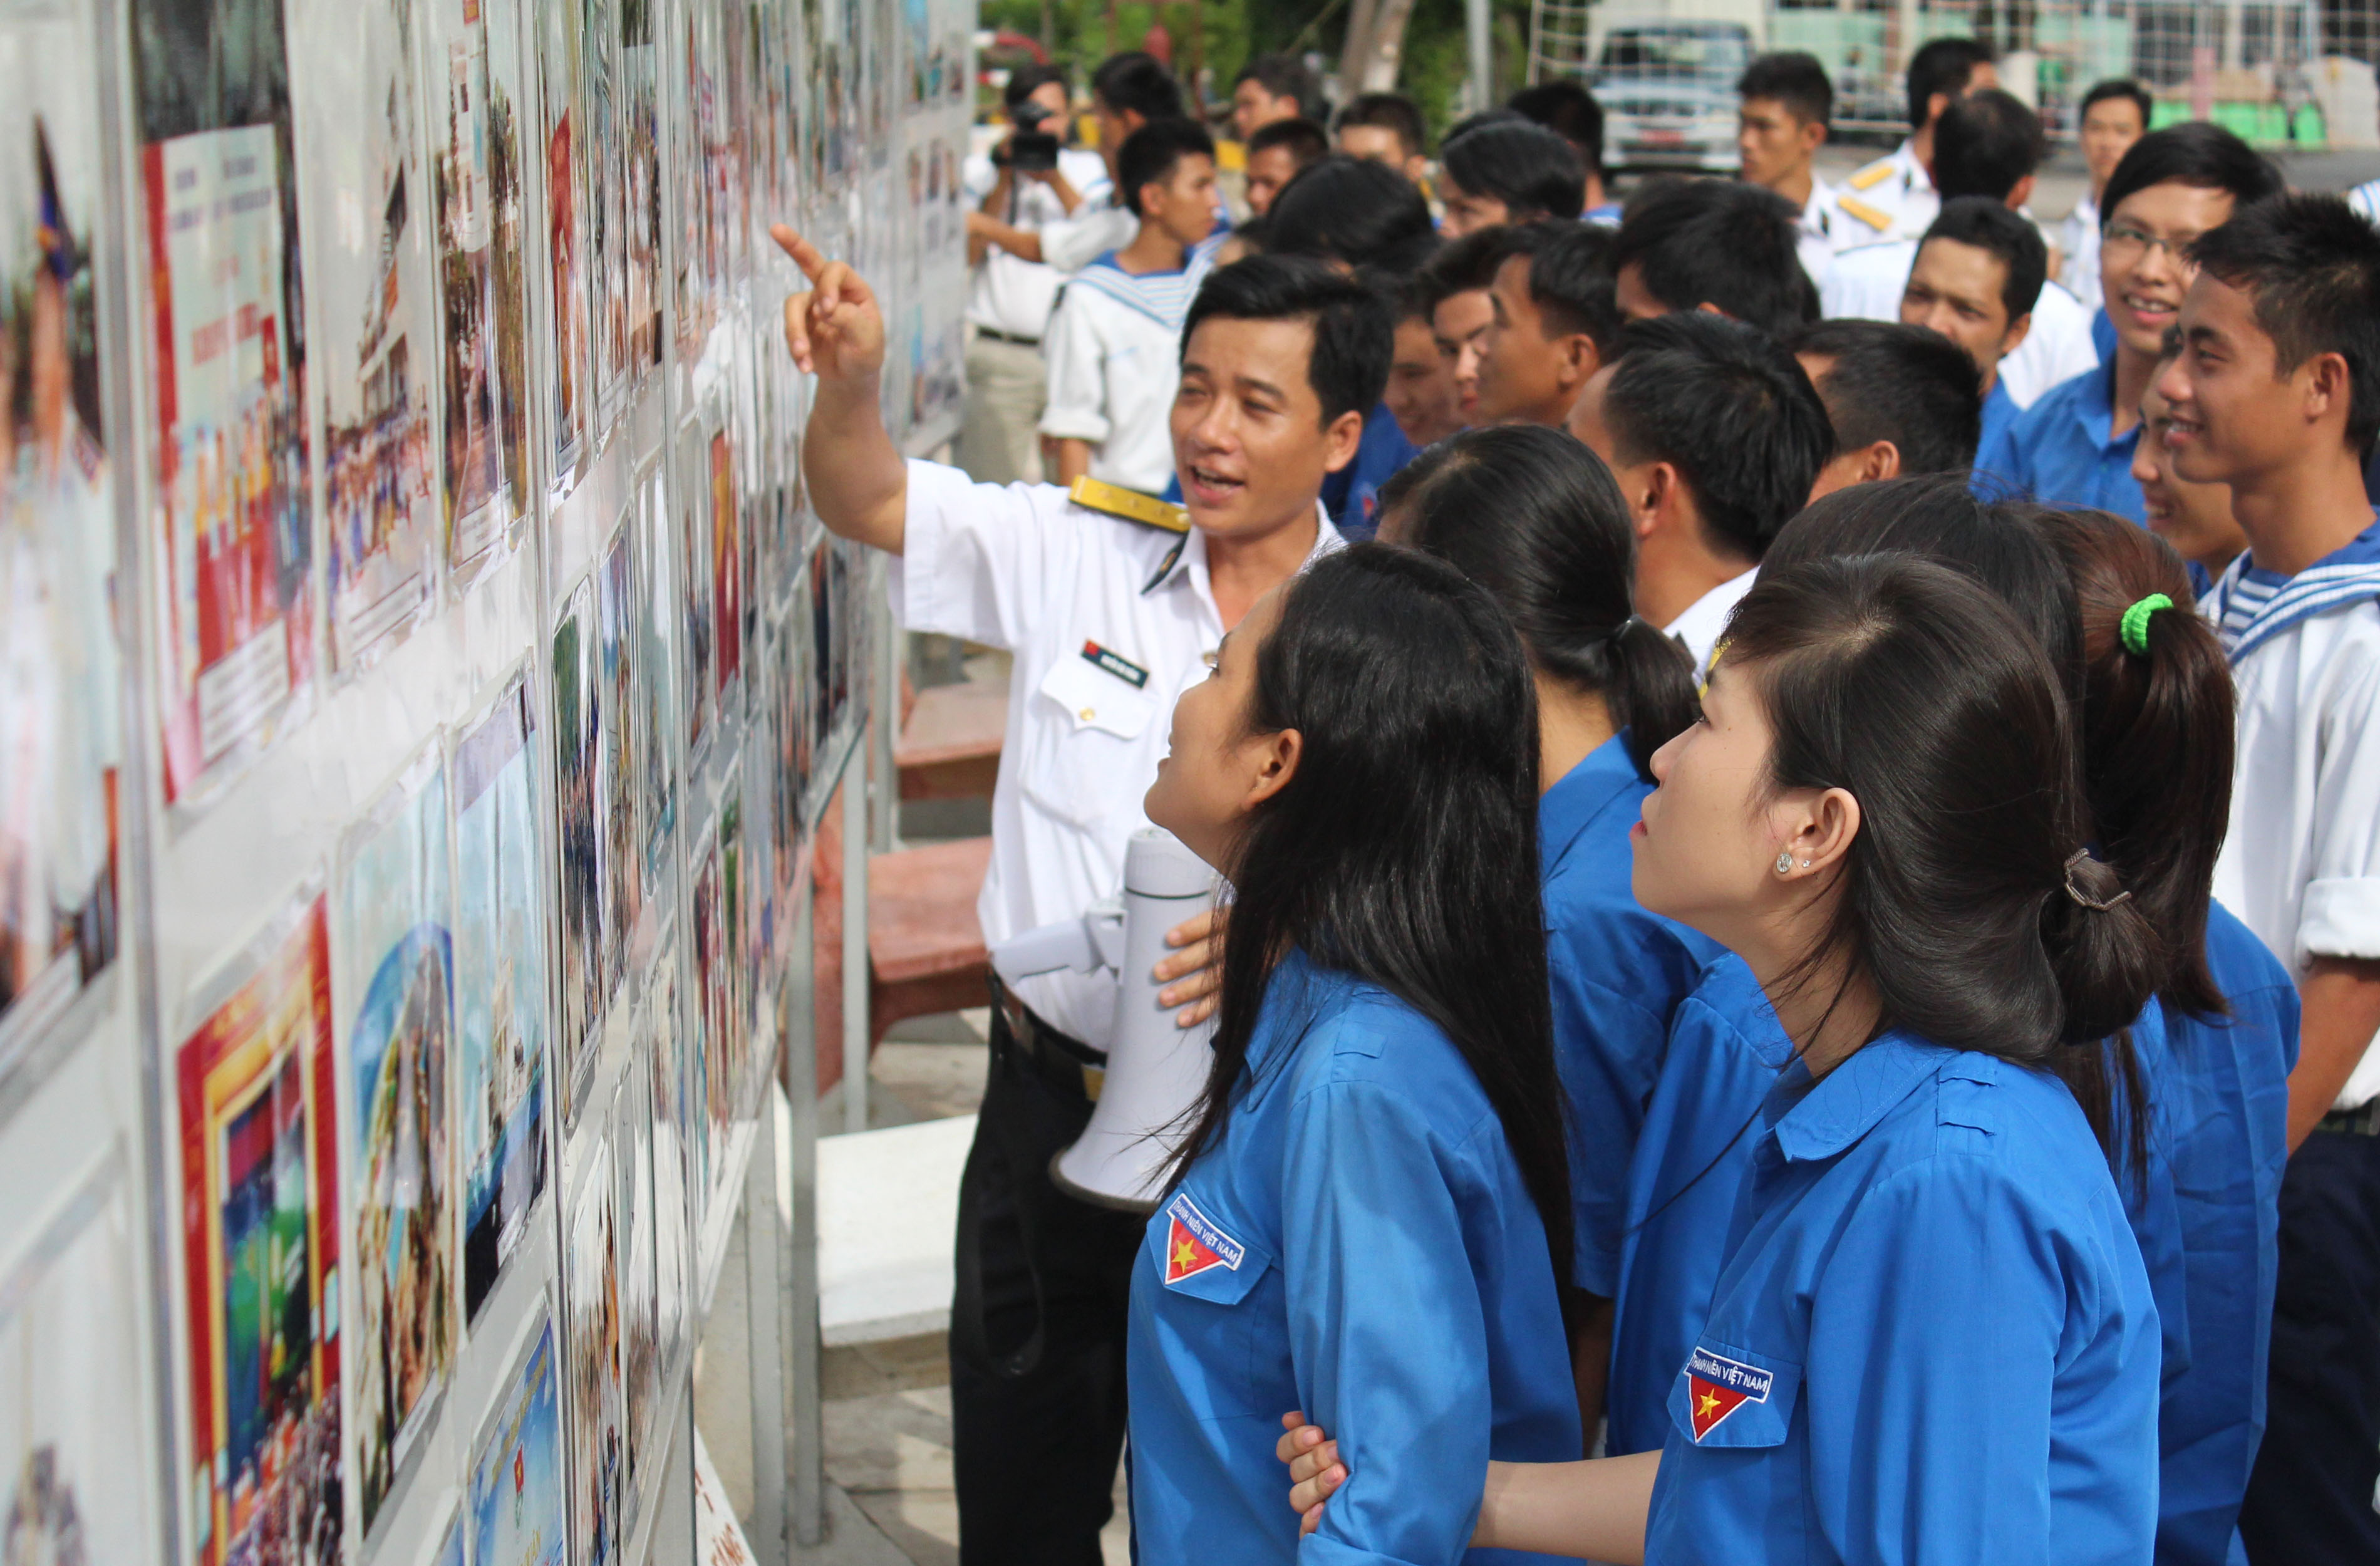 6.Đại úy Nguyễn Văn Thắng giới thiệu với đơn vị kết nghĩa tham quan triển lãm ảnh với chủ đề Bảo vệ chủ quyền biển đảo tại Lữ đoàn 962